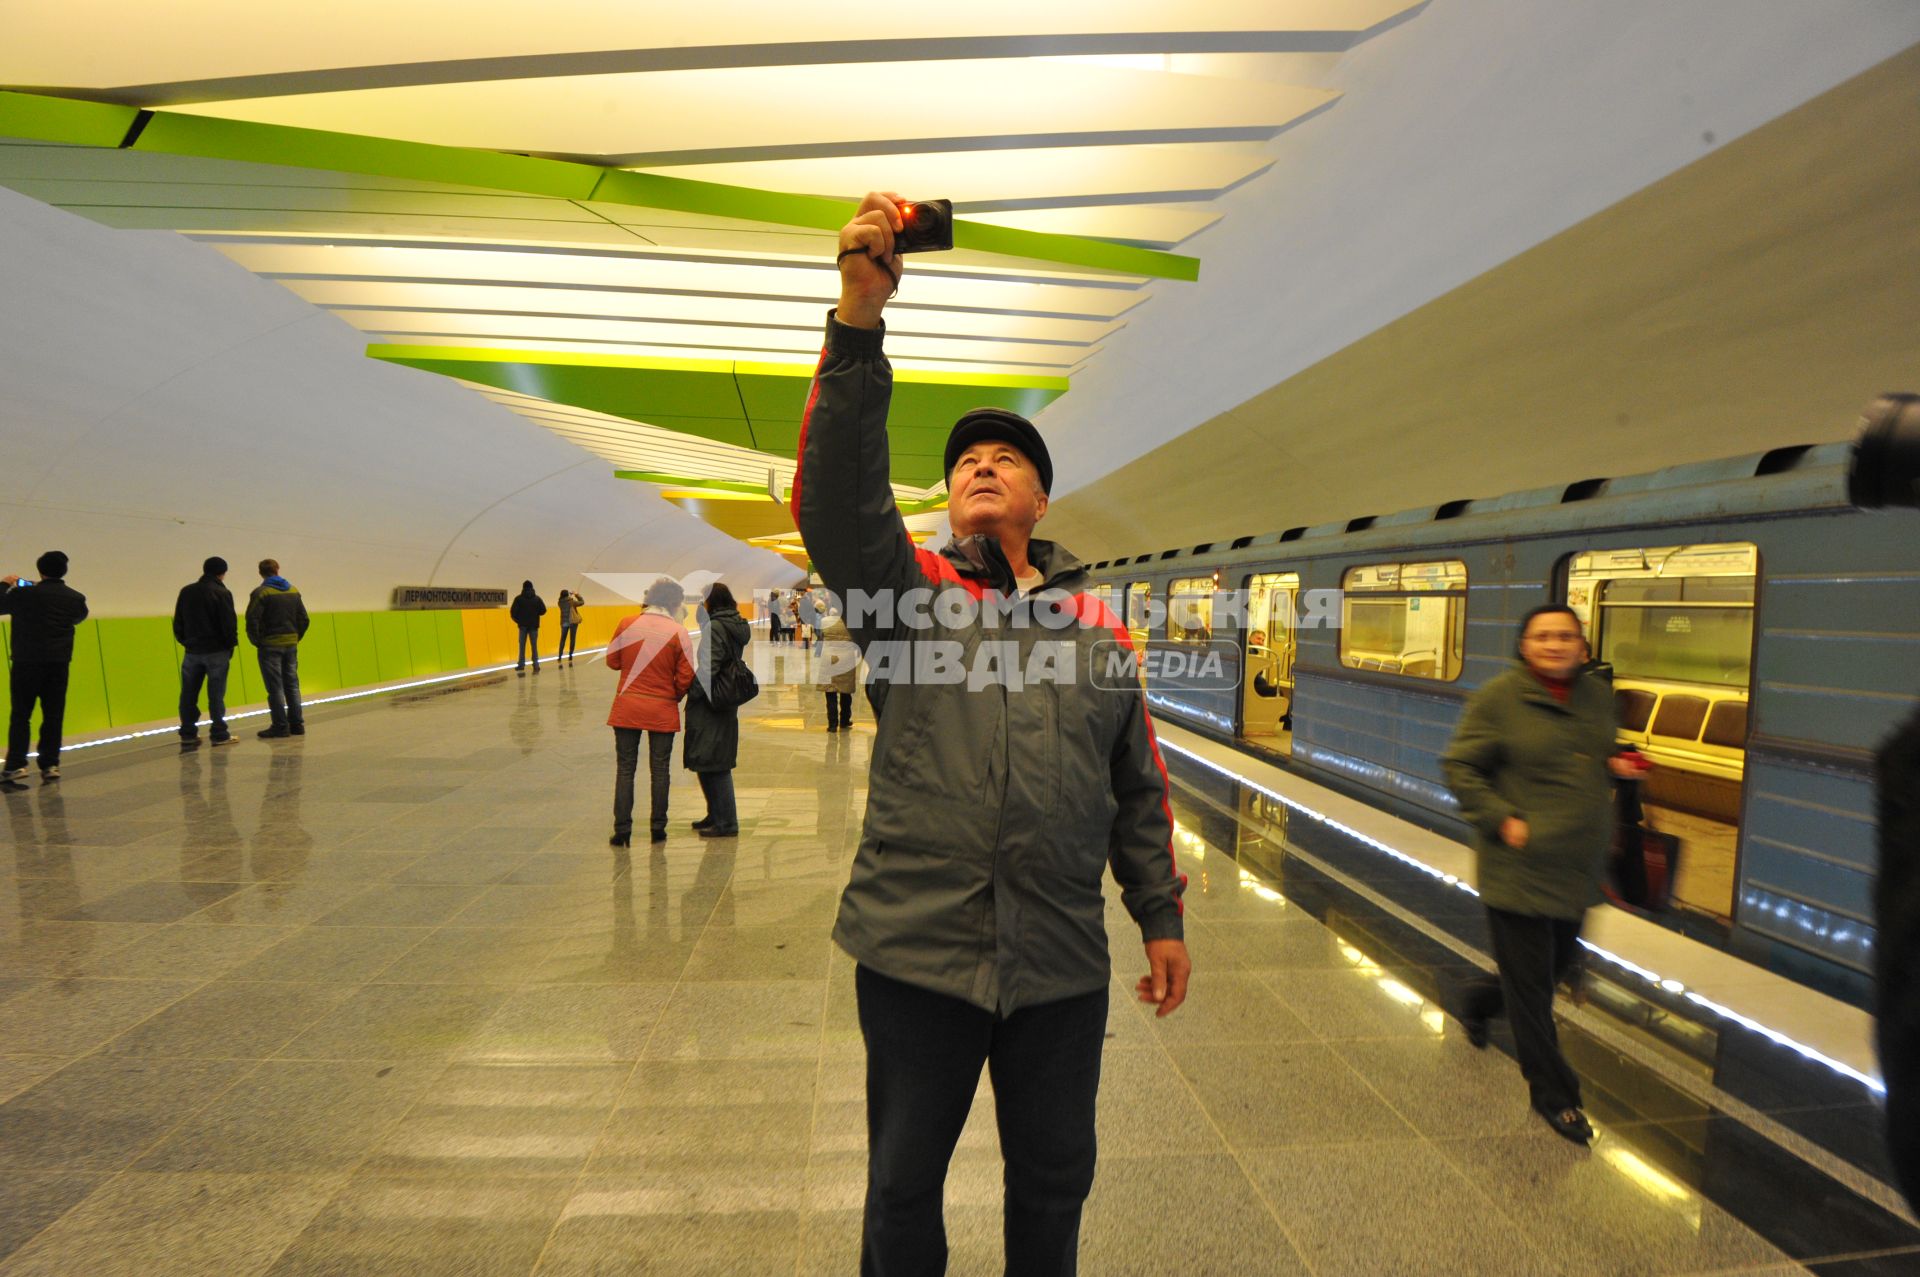 Открытие станции метро `Лермонтовский проспект`. На снимке: мужчина фотографирует на смартфон перечень станций метро.